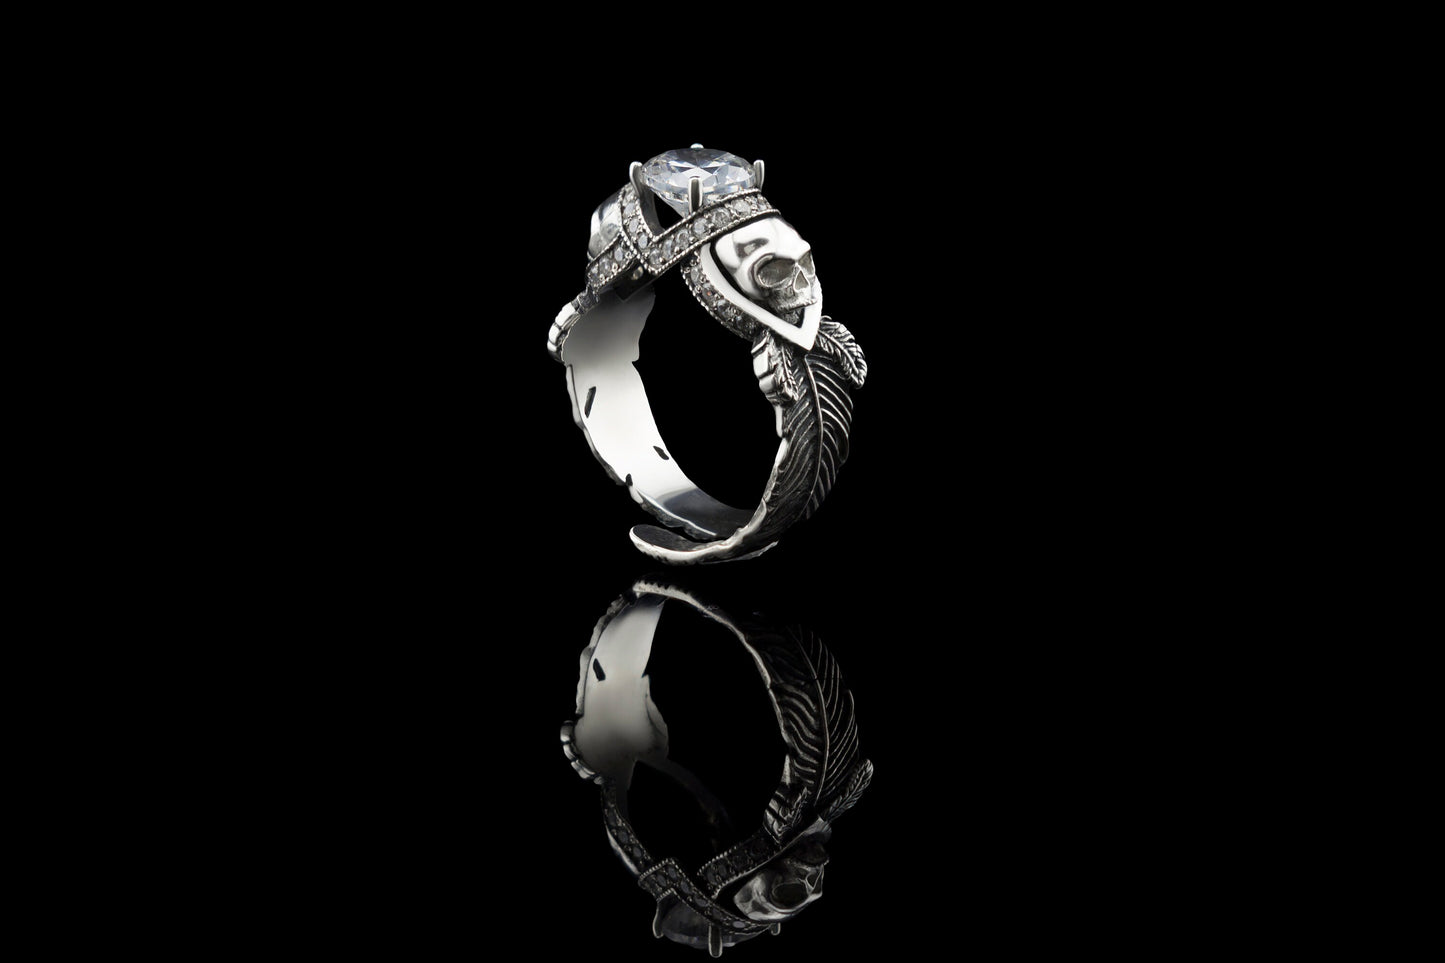 Adjustable skull ring Silver skull ring Adjustable ring Feather Skull jewelry